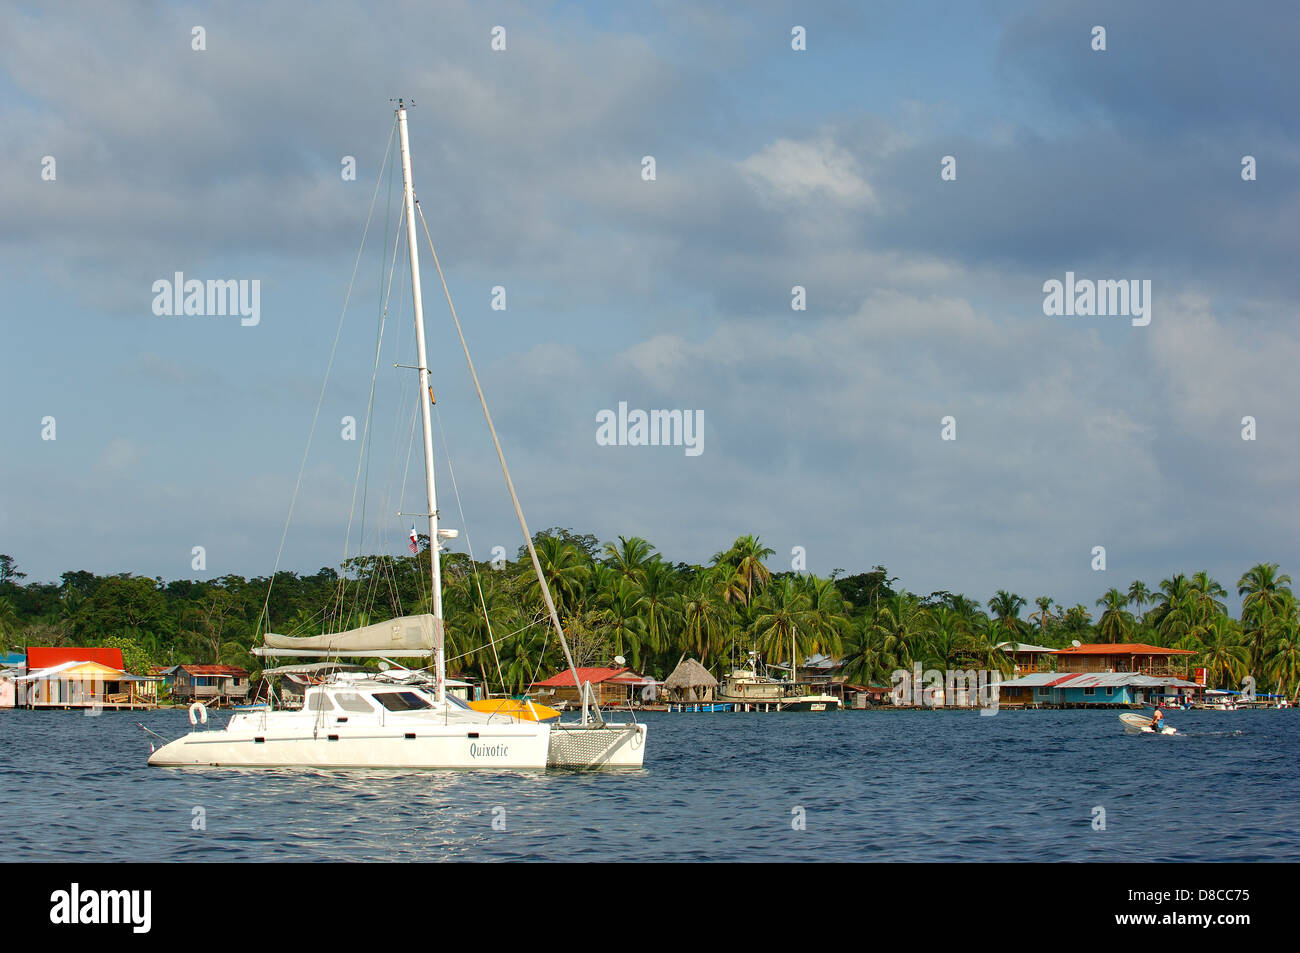 Catamaran sail boat moored at the shore Stock Photo